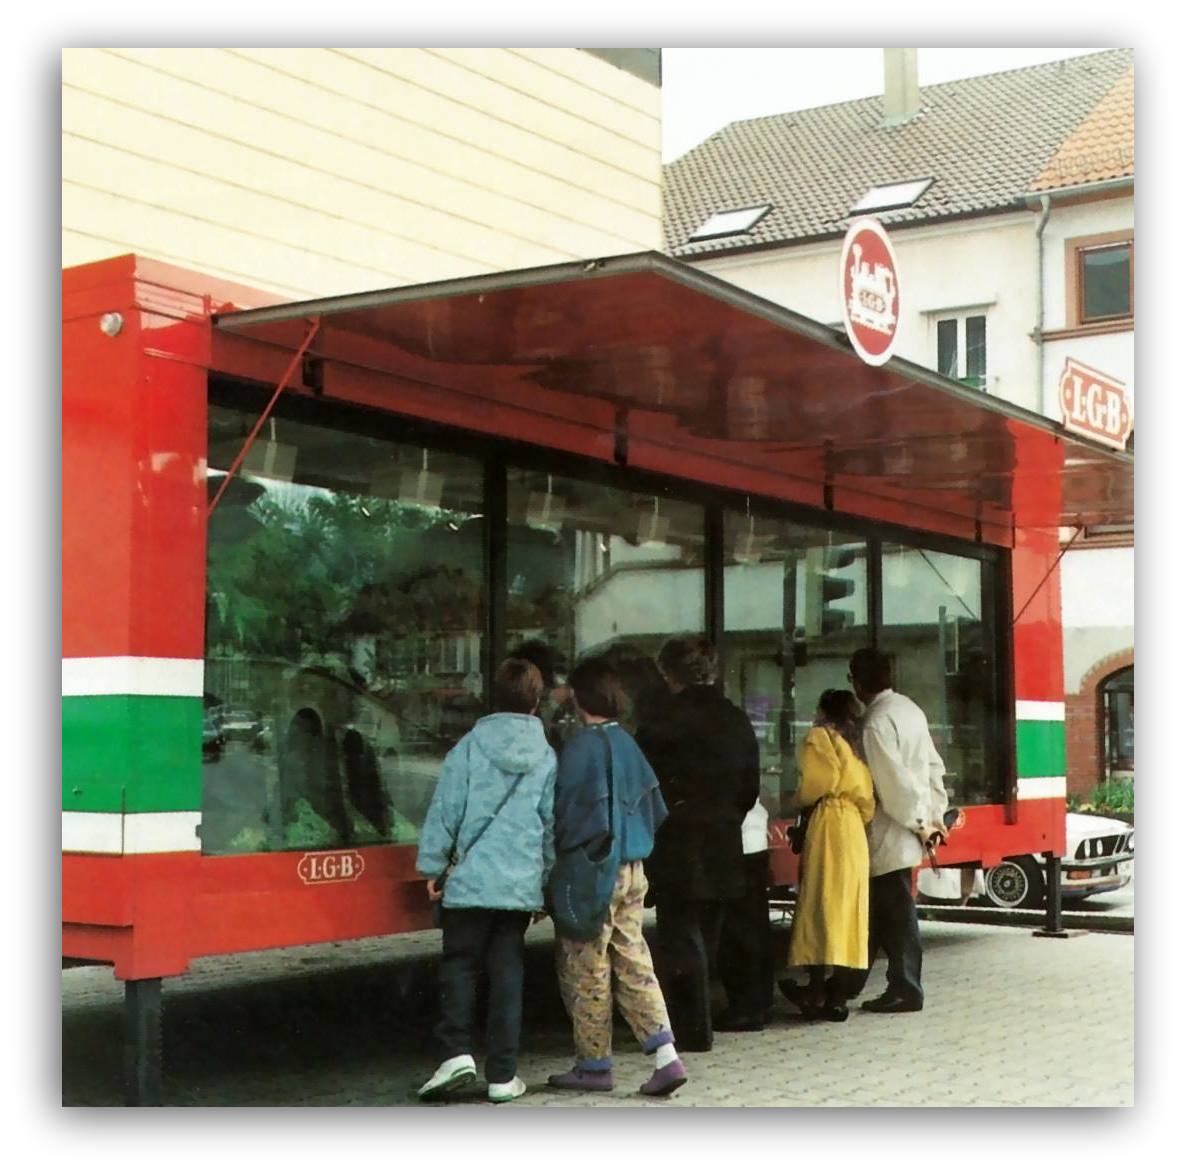 Wir freuen uns, wenn die Kinder und Erwachsenen auf dem Nrnberger Christkindlesmarkt sich auch, wie hier im Sommer 1989 in Bergzabern, am Ausstellungswagen die "Nasen" platt drcken!